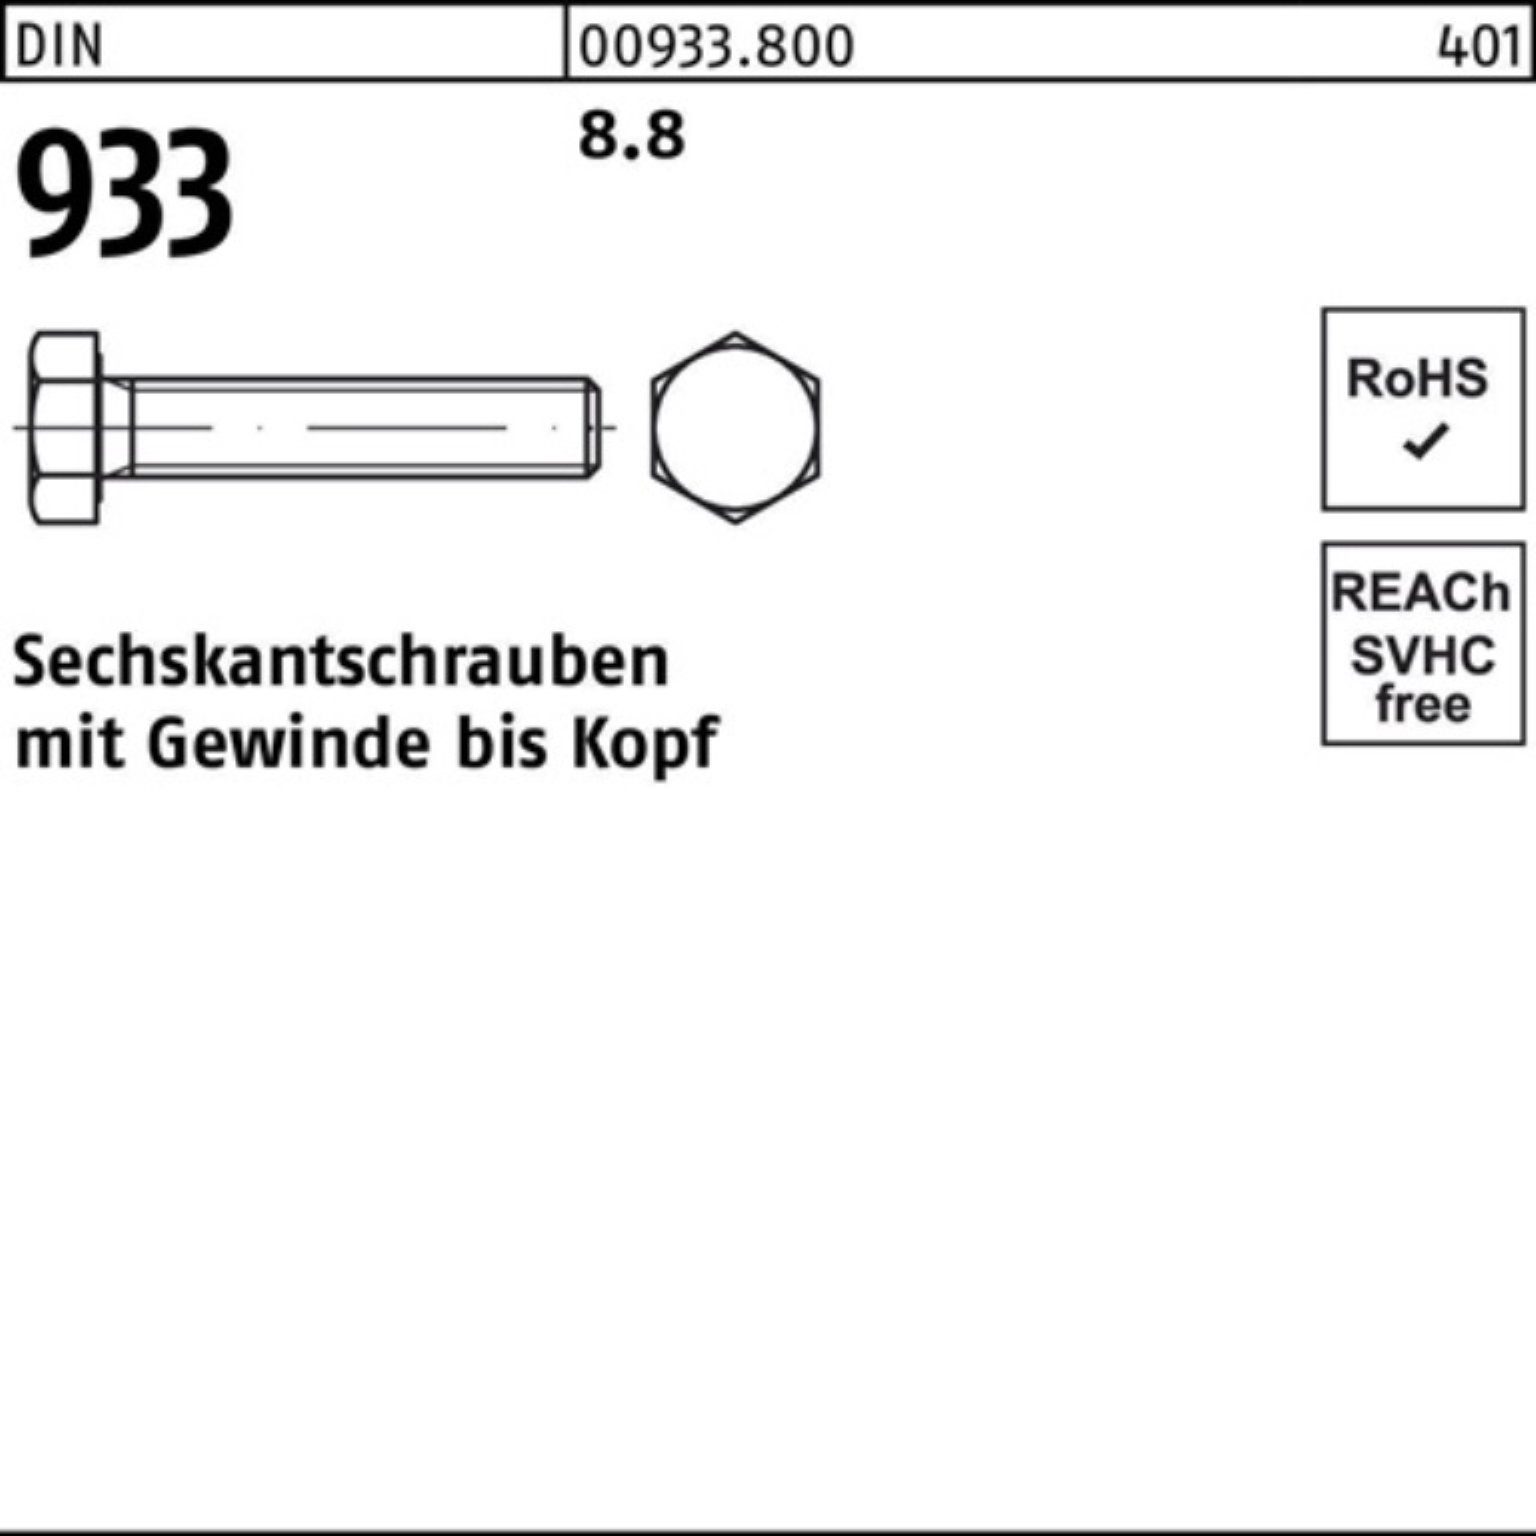 Stück DIN 933 Reyher DIN 8.8 Pack Sechskantschraube 20 M8x 200 Sechskantschraube 933 VG 200er